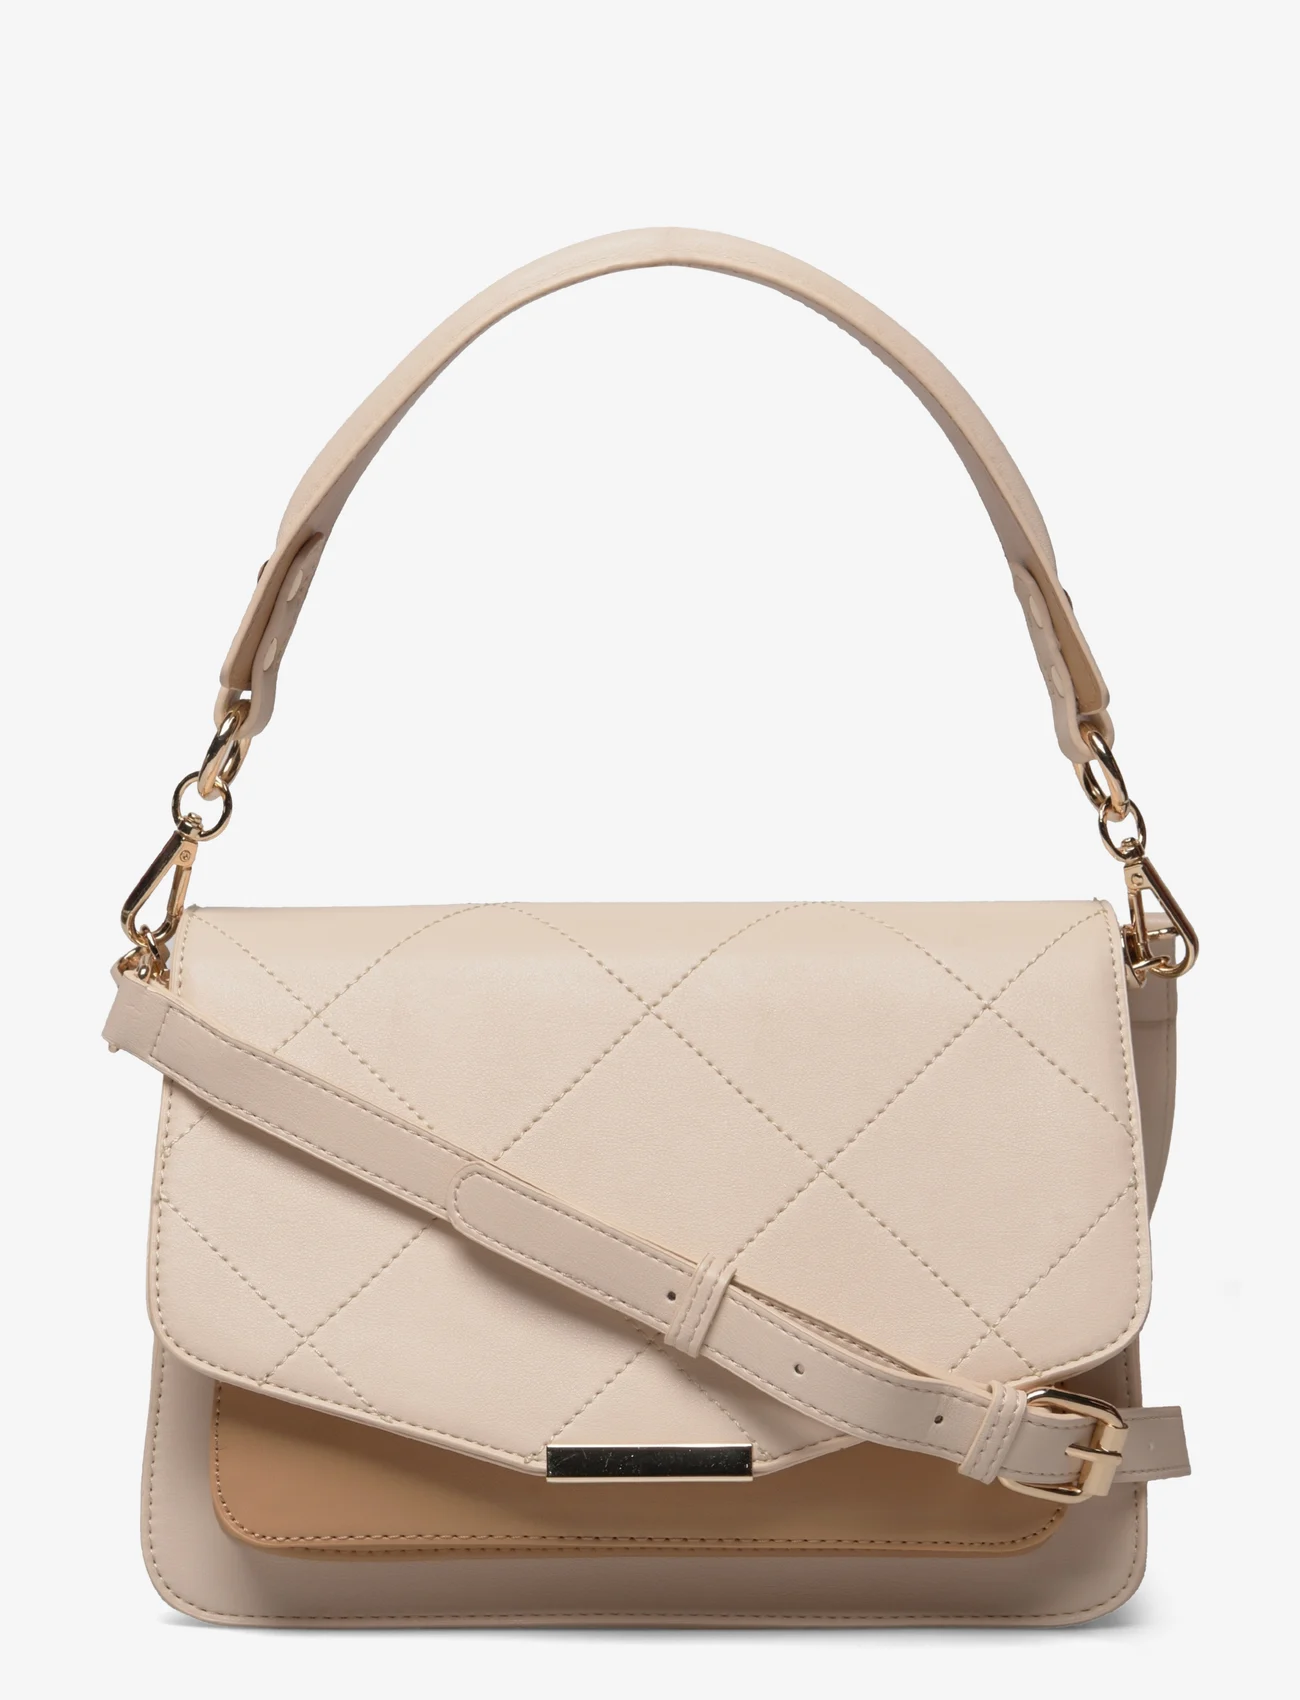 Noella - Blanca Multi Compartment Bag - odzież imprezowa w cenach outletowych - nude leather look - 0